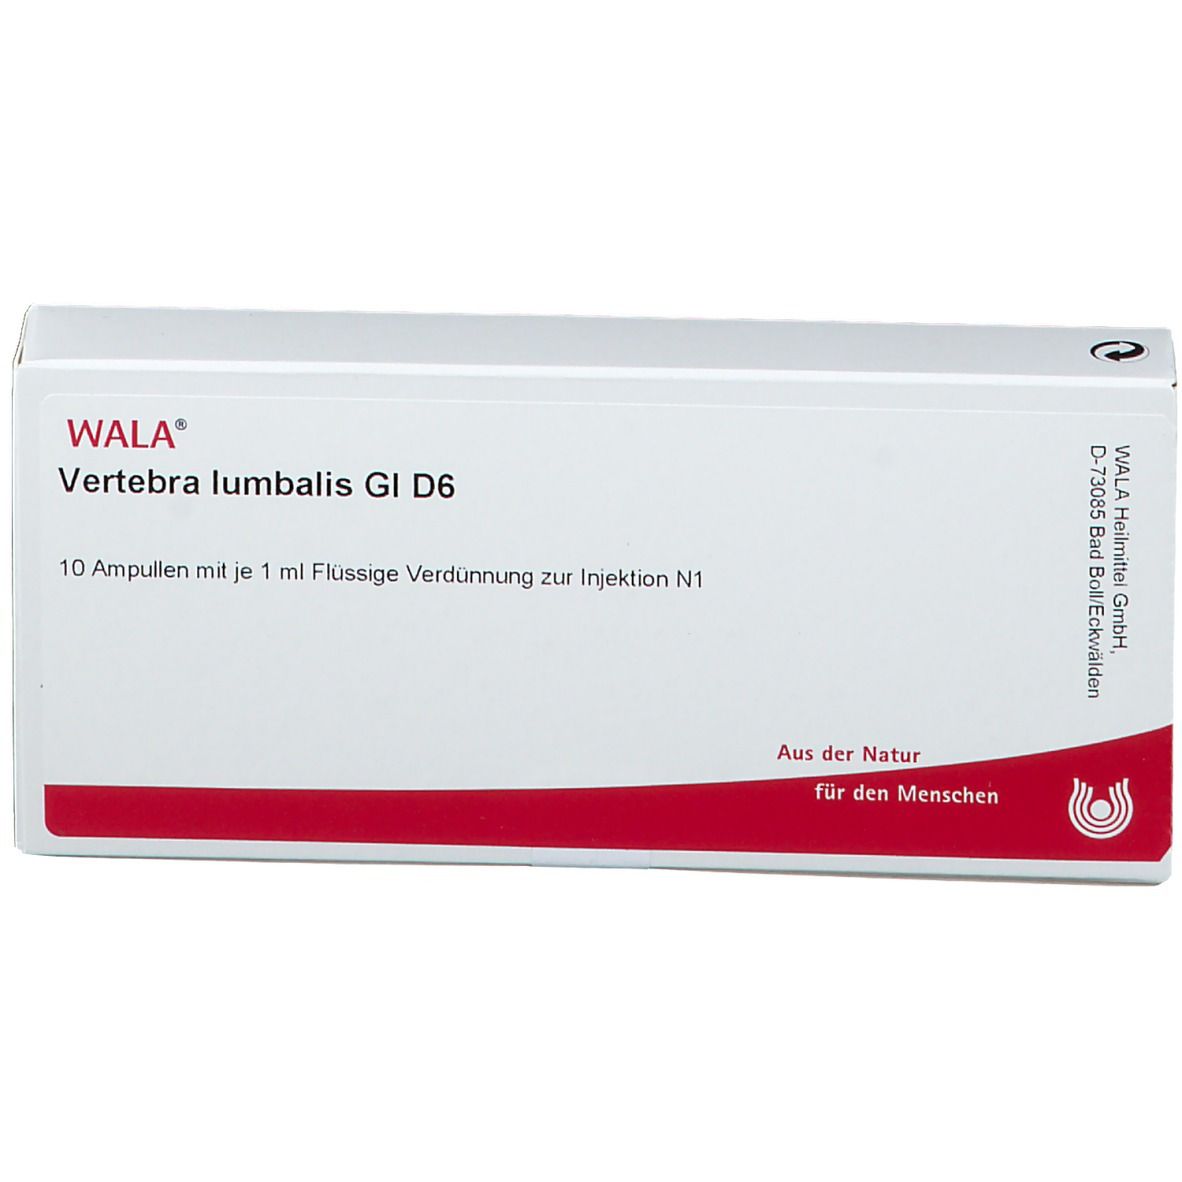 WALA® Vertebra lumbalis Gl D 6